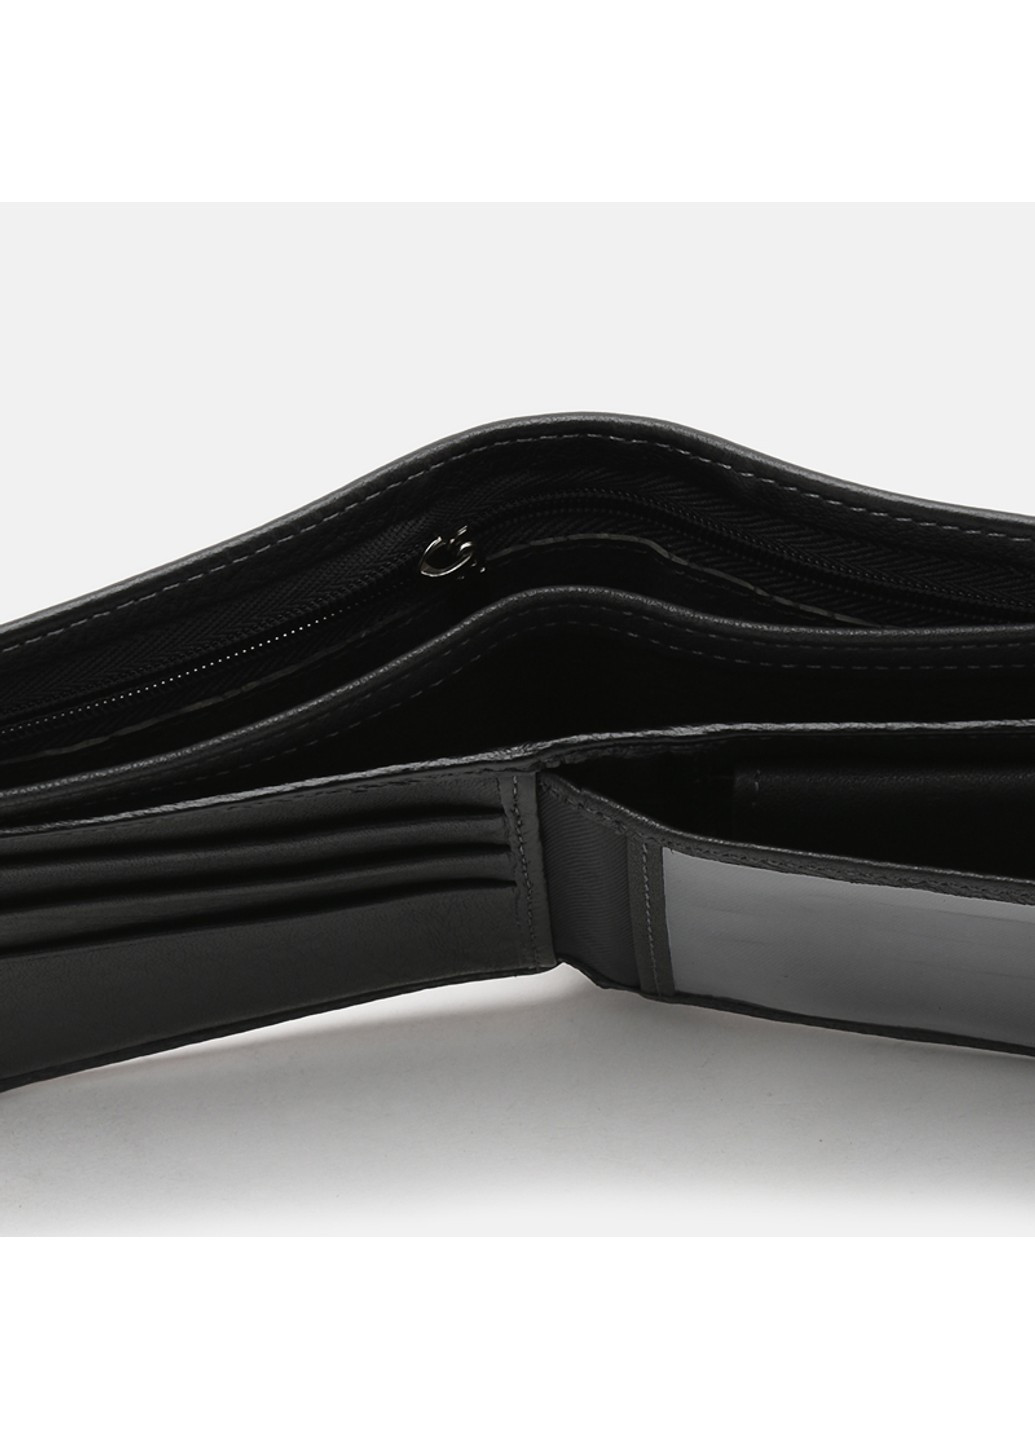 Мужской кожаный портмоне K1208-black Ricco Grande (266144098)